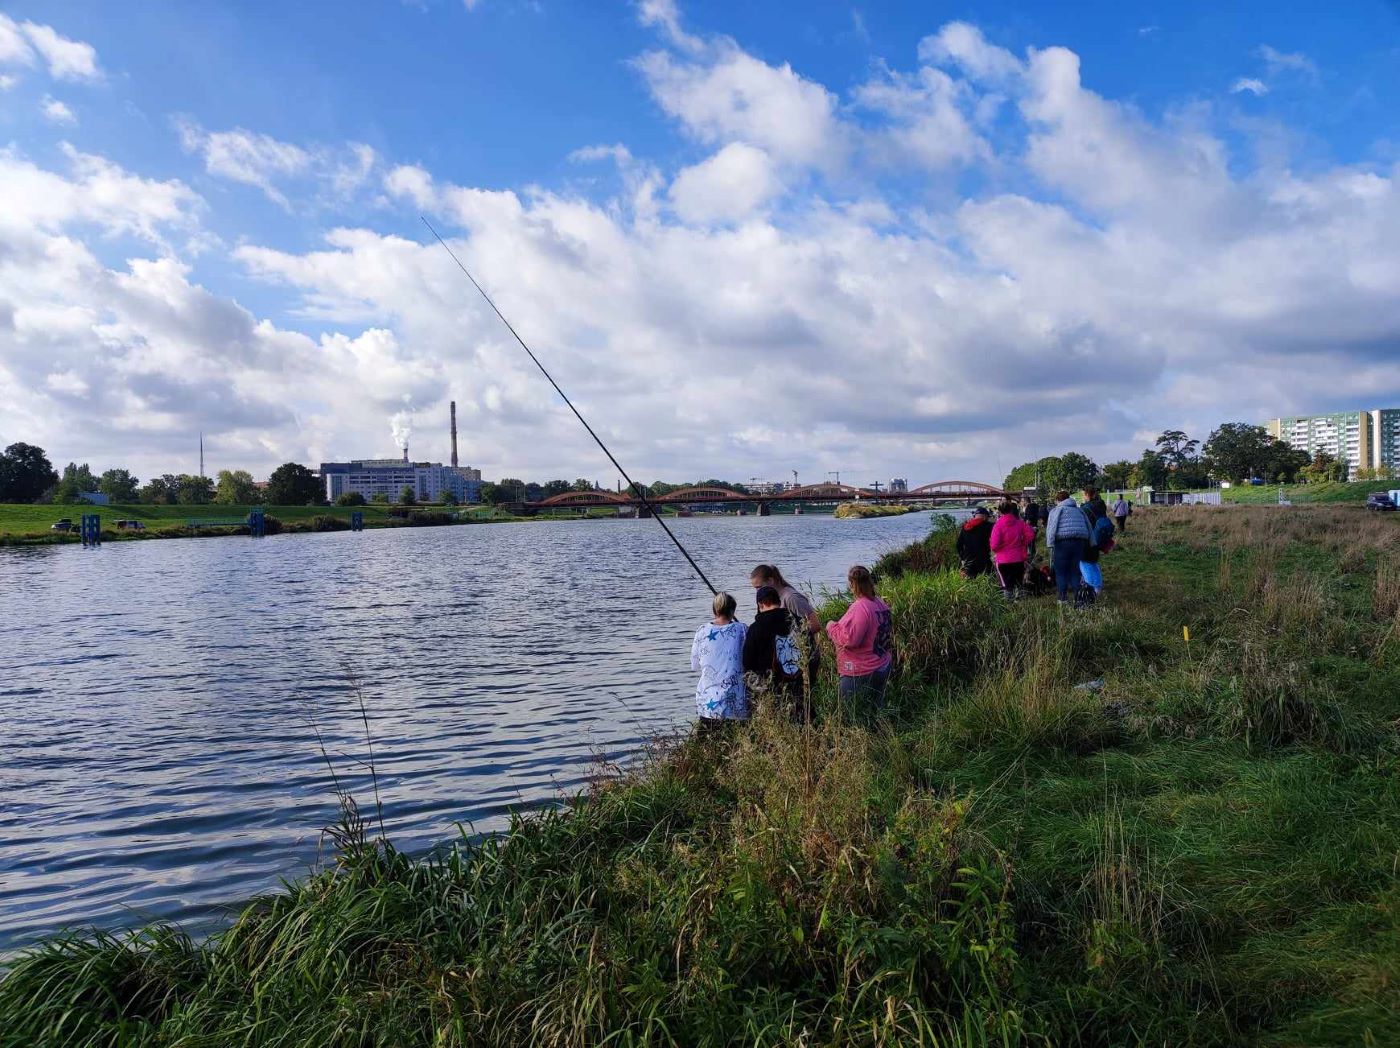 Ogólny widok na rzekę Odrę i uczestników zawodów wędkarskich siedzących z wędkami nad brzegiem rzeki